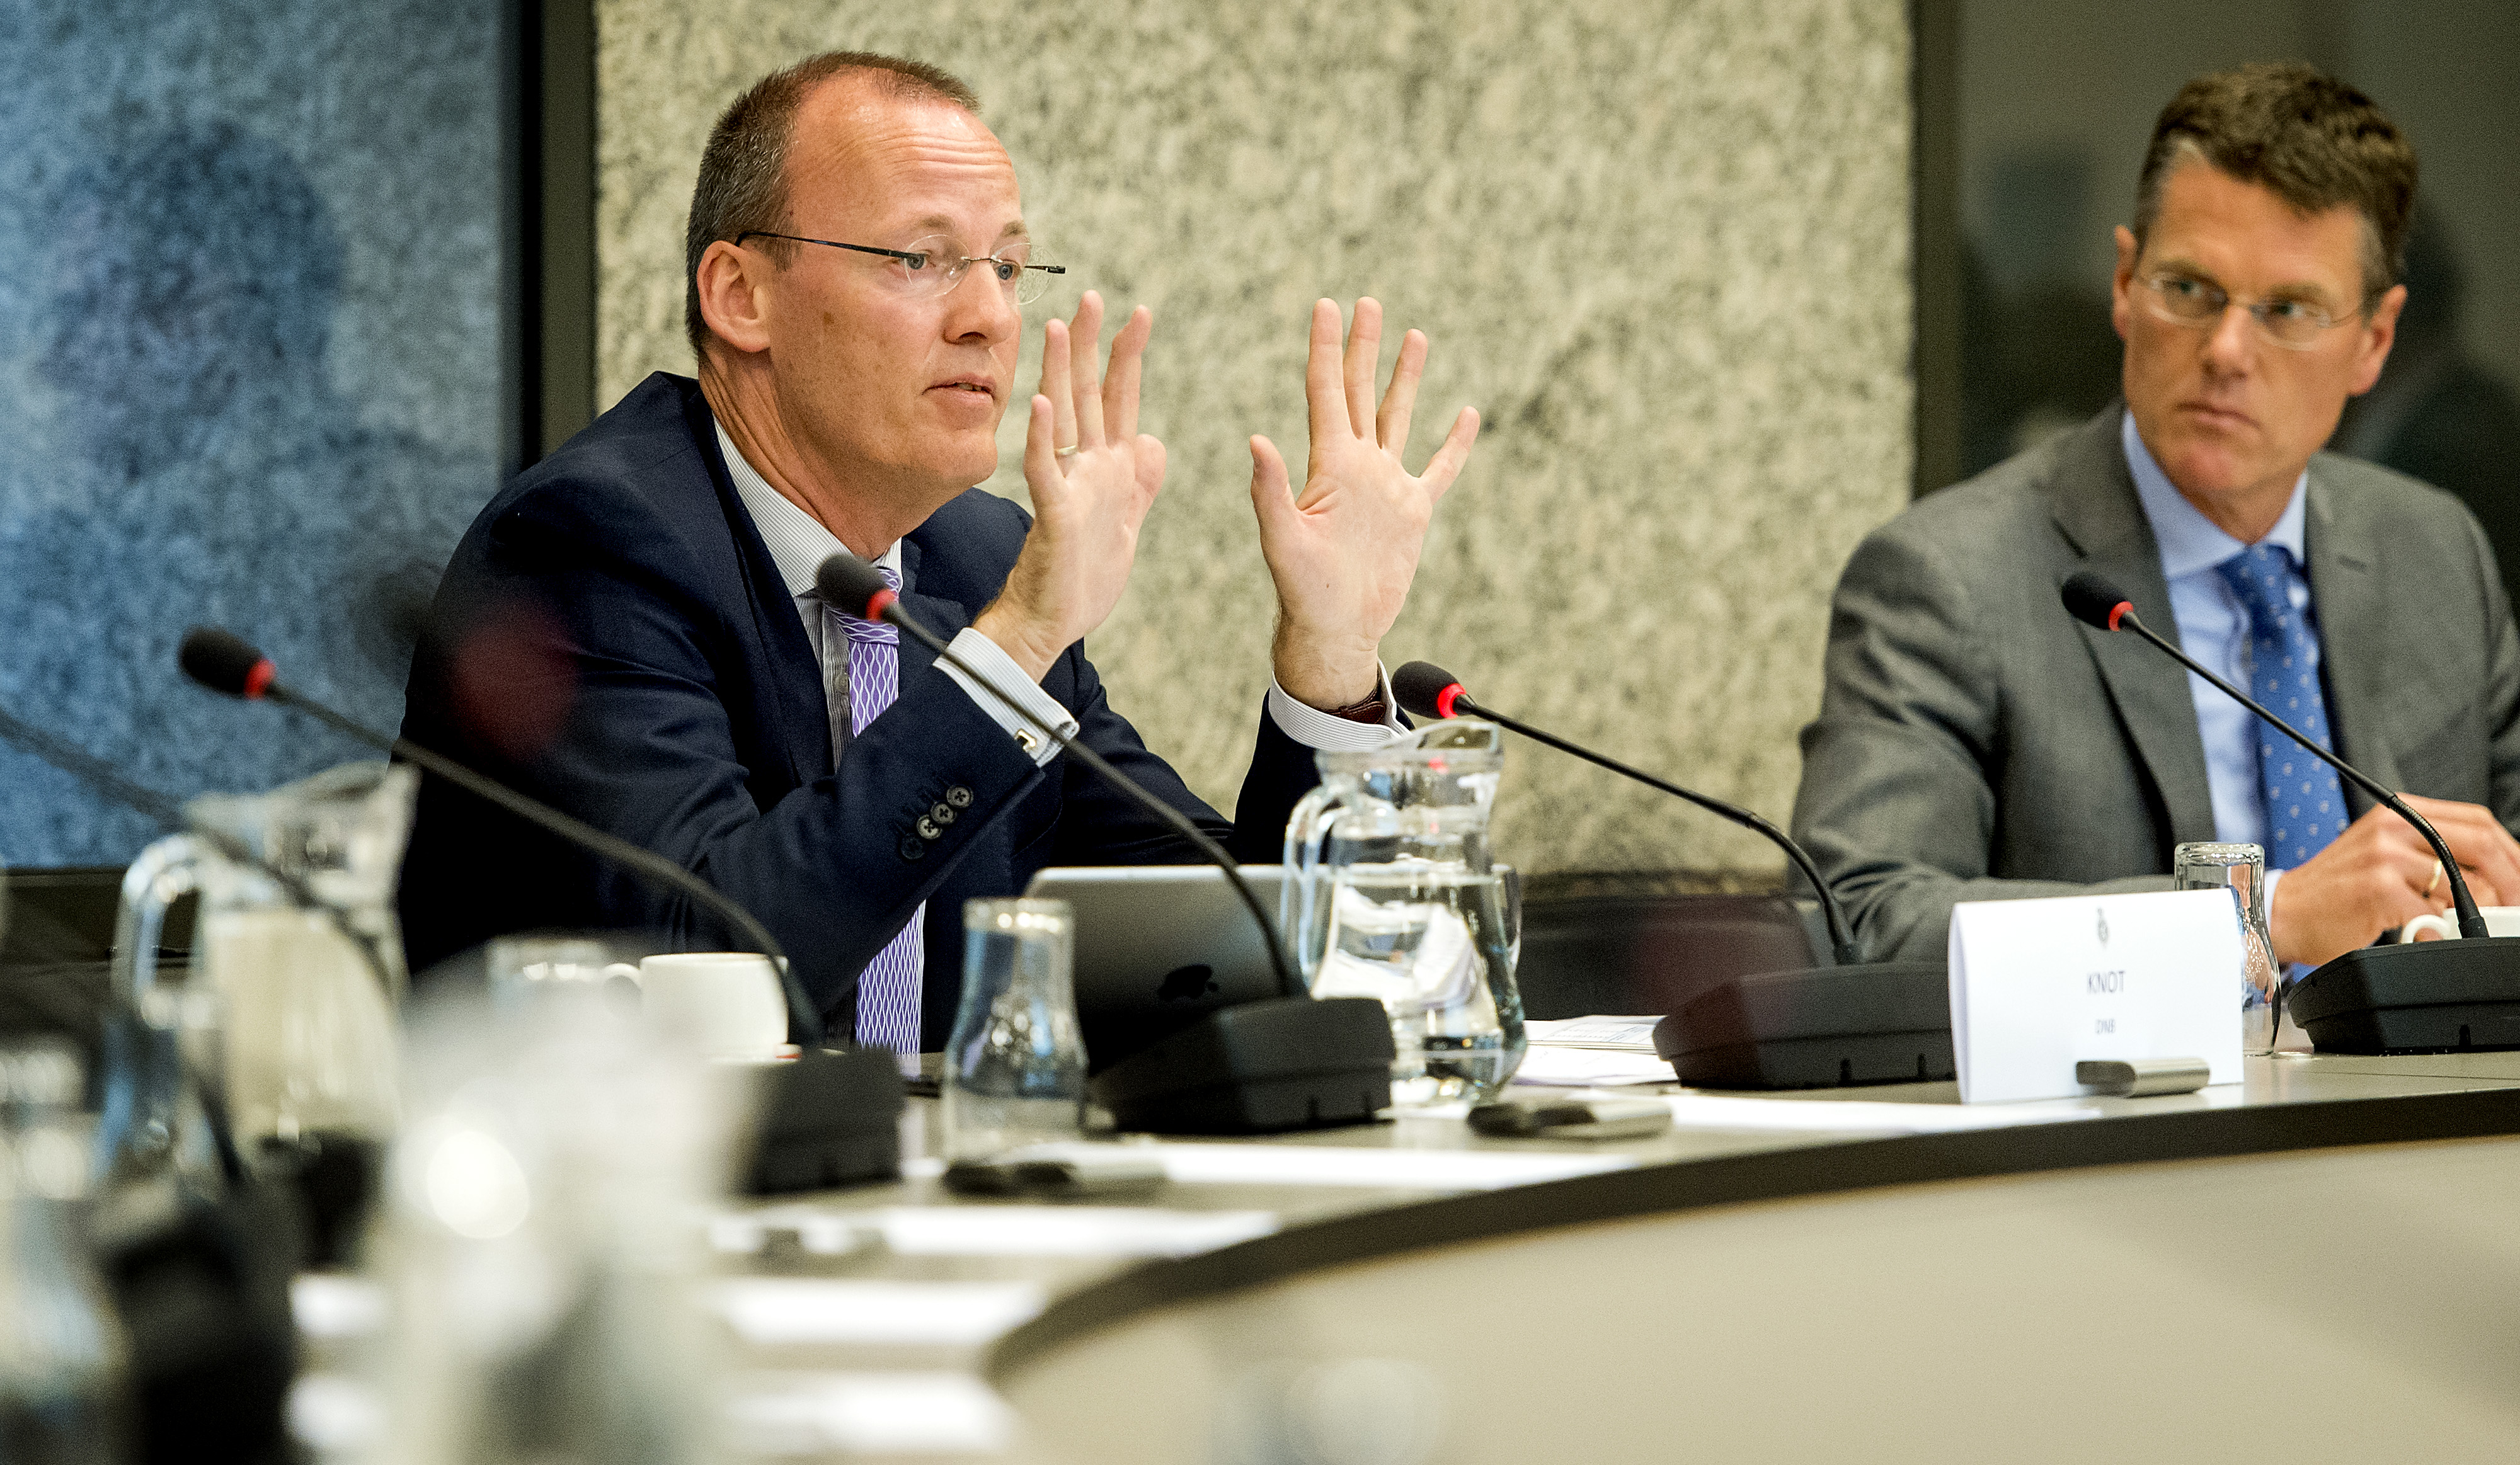 2016-04-13 09:37:59 DEN HAAG - President Klaas Knot van DNB tijdens een rondetafegesprek over het ECB-beleid van de commissie Financien in de Tweede Kamer. ANP KOEN VAN WEEL